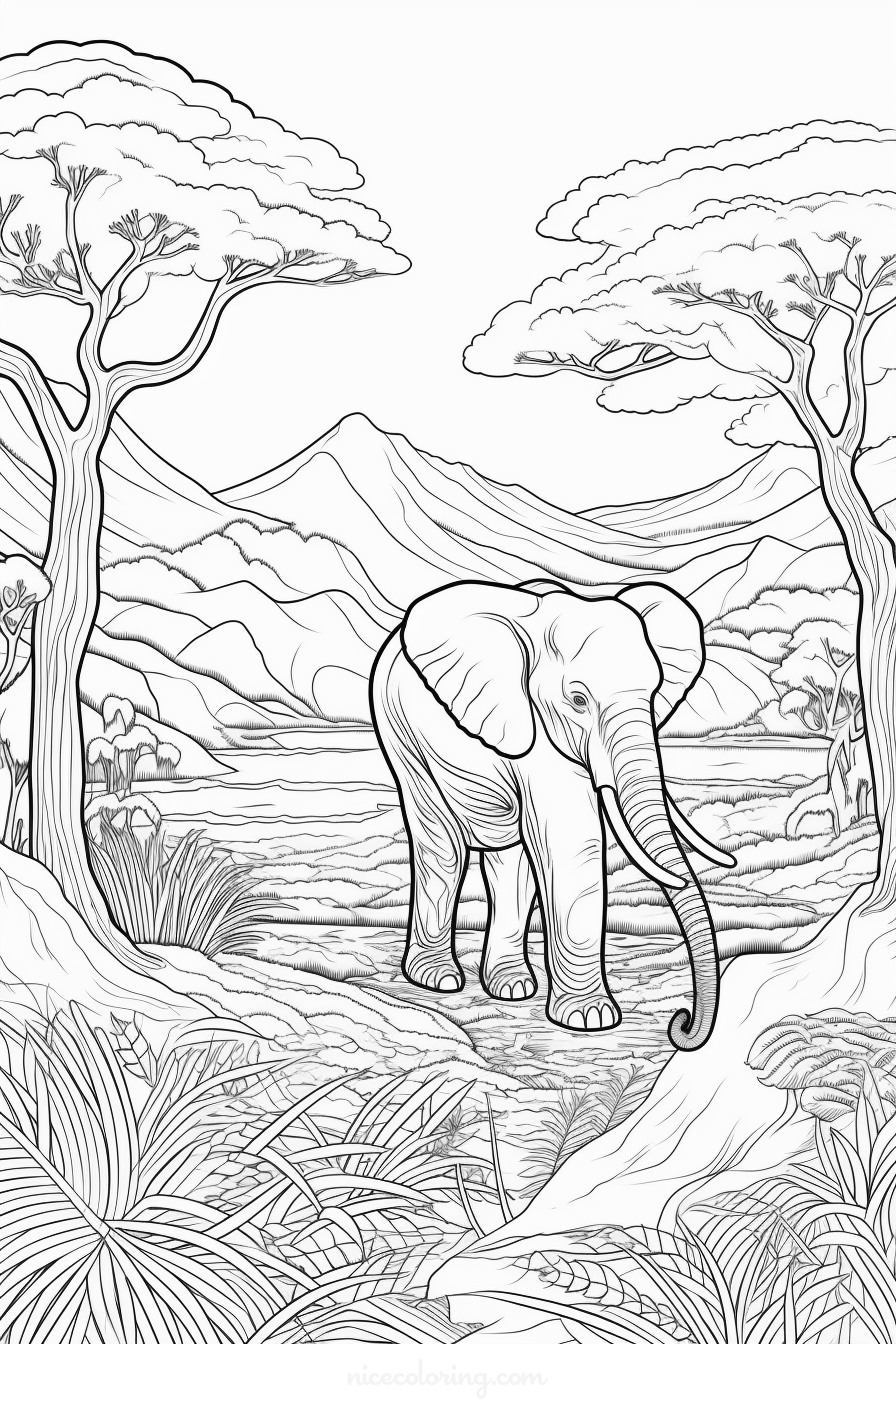 Família de elefantes se divertindo na floresta para colorir